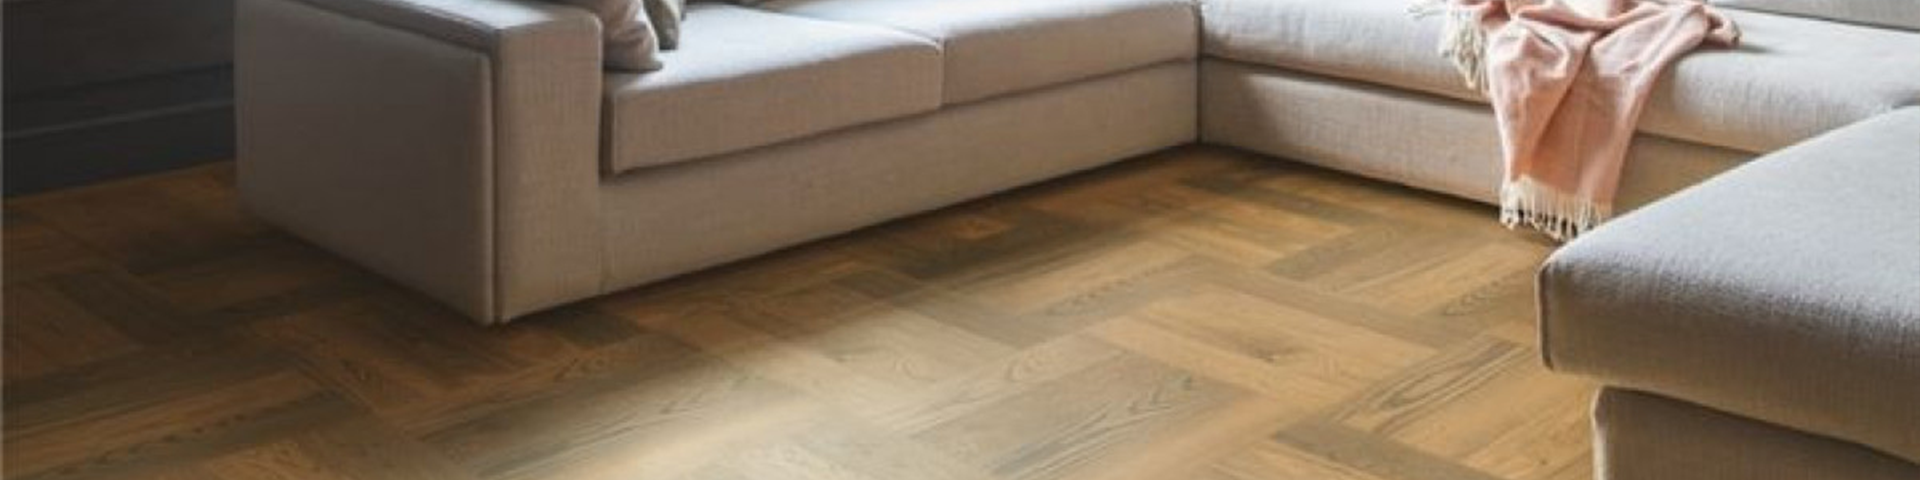 Herringbone Wood Floor